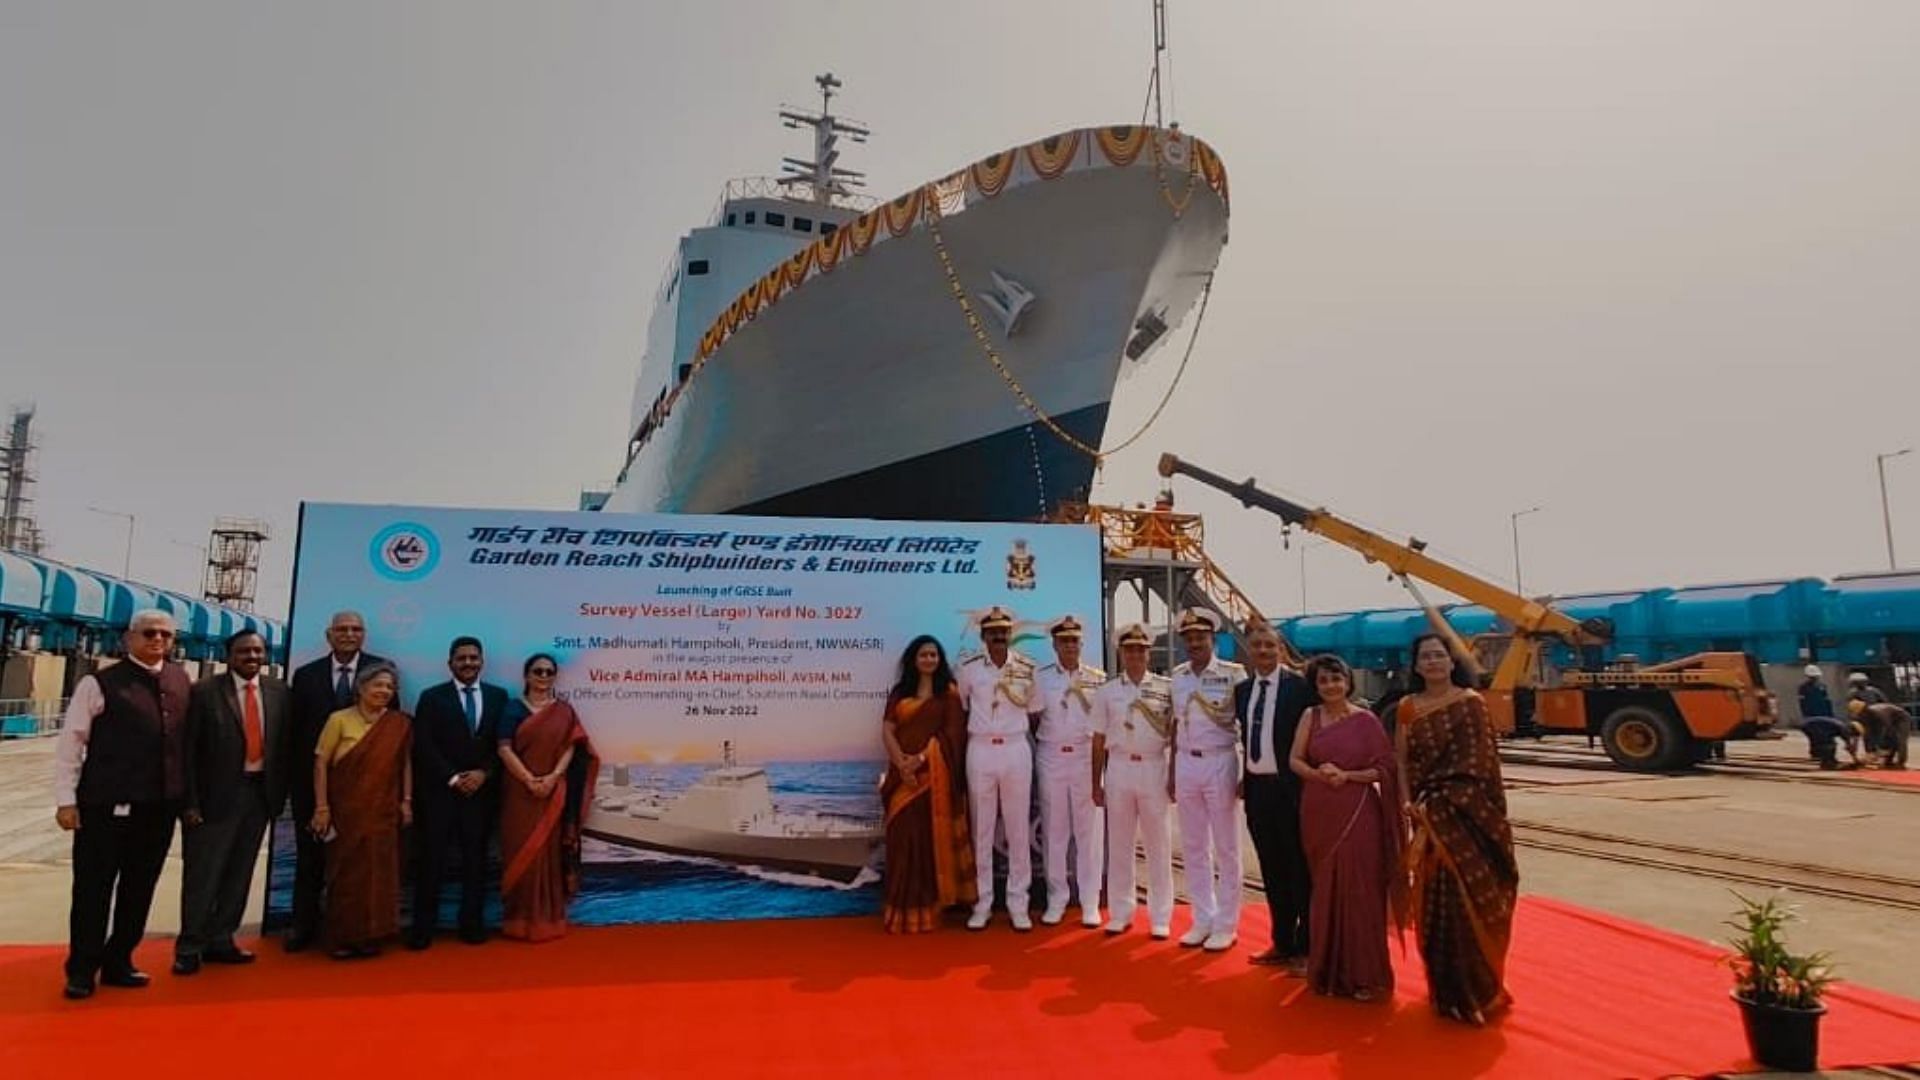 Ikshak Third Large Survey Vessel Built For The Indian Navy Was Launched -  Indian Navy: तीसरा बड़ा सर्वेक्षण पोत 'इक्षक' किया गया लॉन्च, समुद्र में बढ़ेगी  नौसेना की ताकत - Amar Ujala